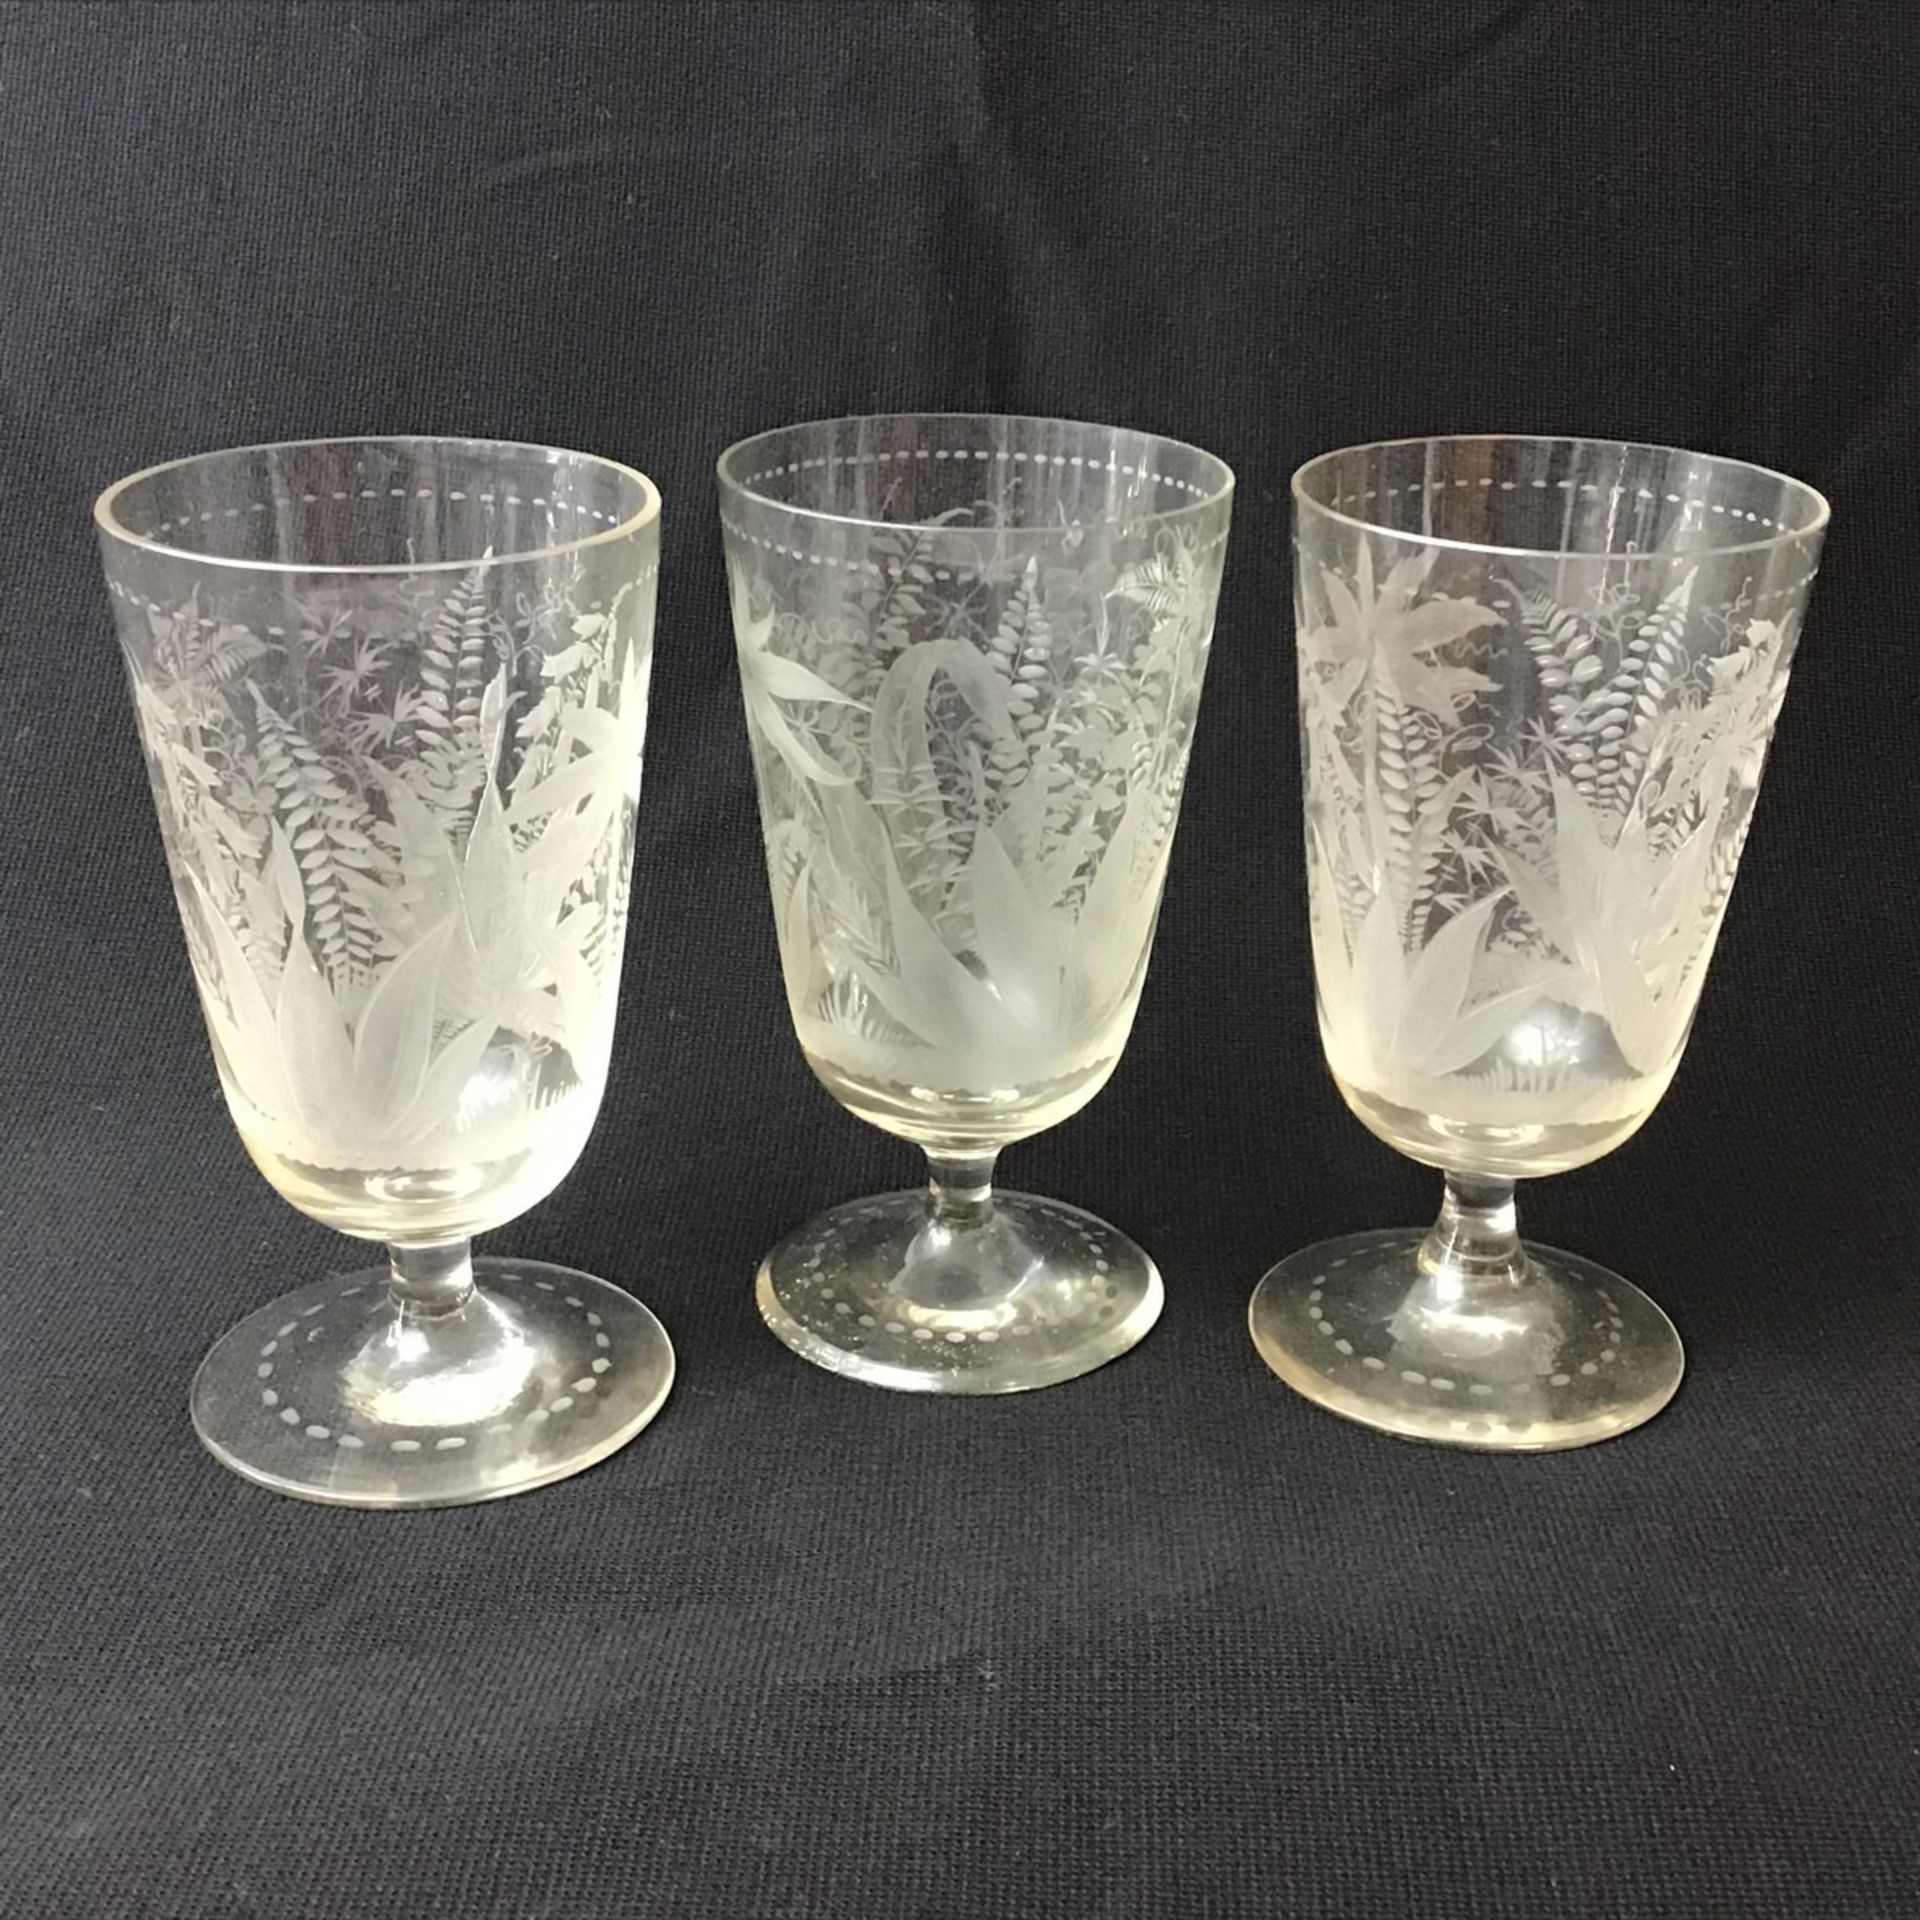 Drei Biedermeier Pokalgläser, farbloses Glas mit exotischem Ätzschliff (u.a.Palmen, Gräser),